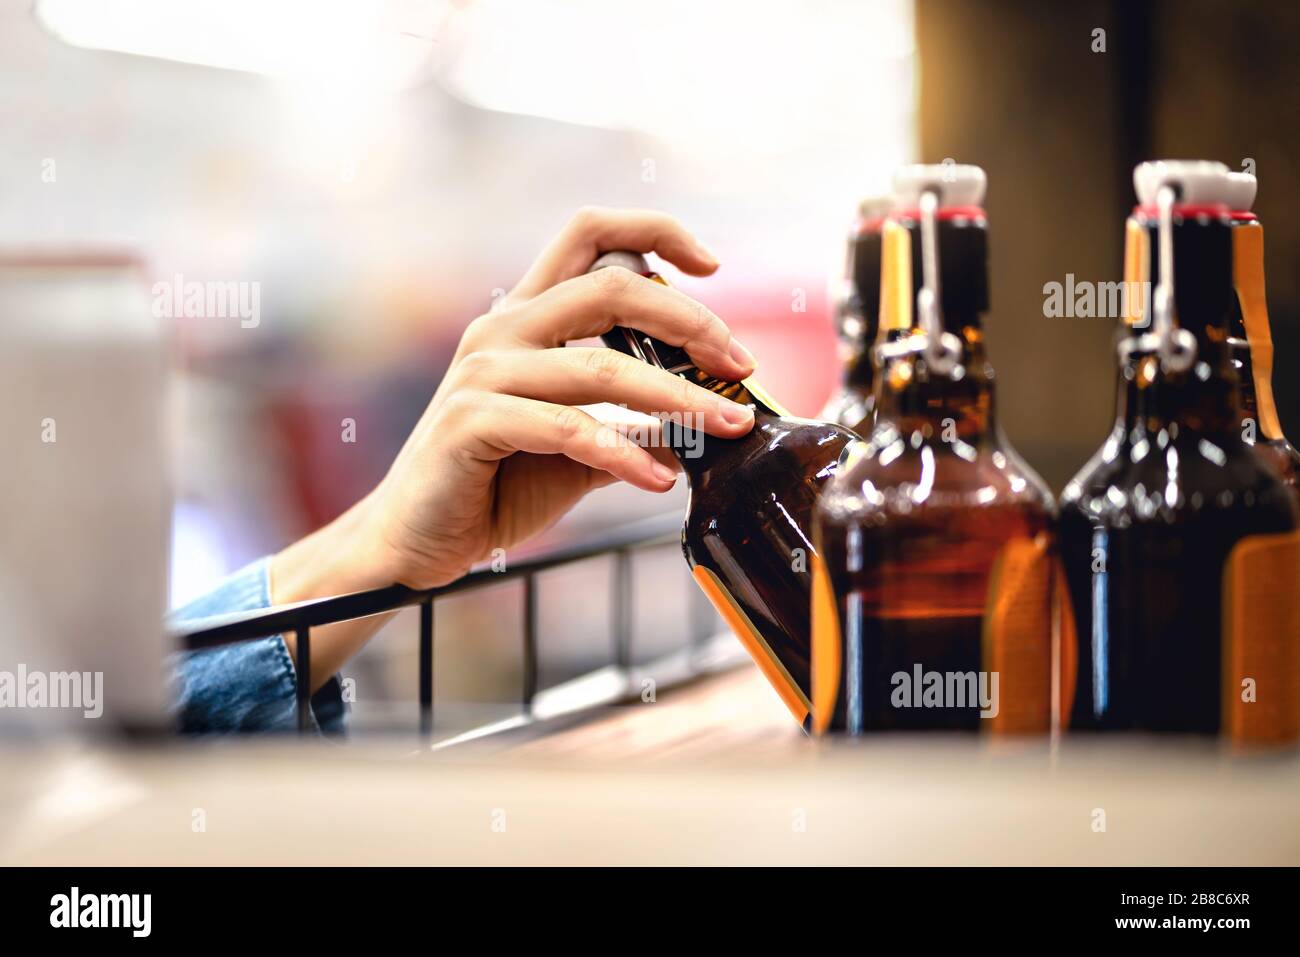 Consegna a mano una bottiglia di birra dallo scaffale in un negozio di alcolici e liquori. Cliente che acquista sidro o supermercato personale riempire e stoccaggio scaffali. Foto Stock